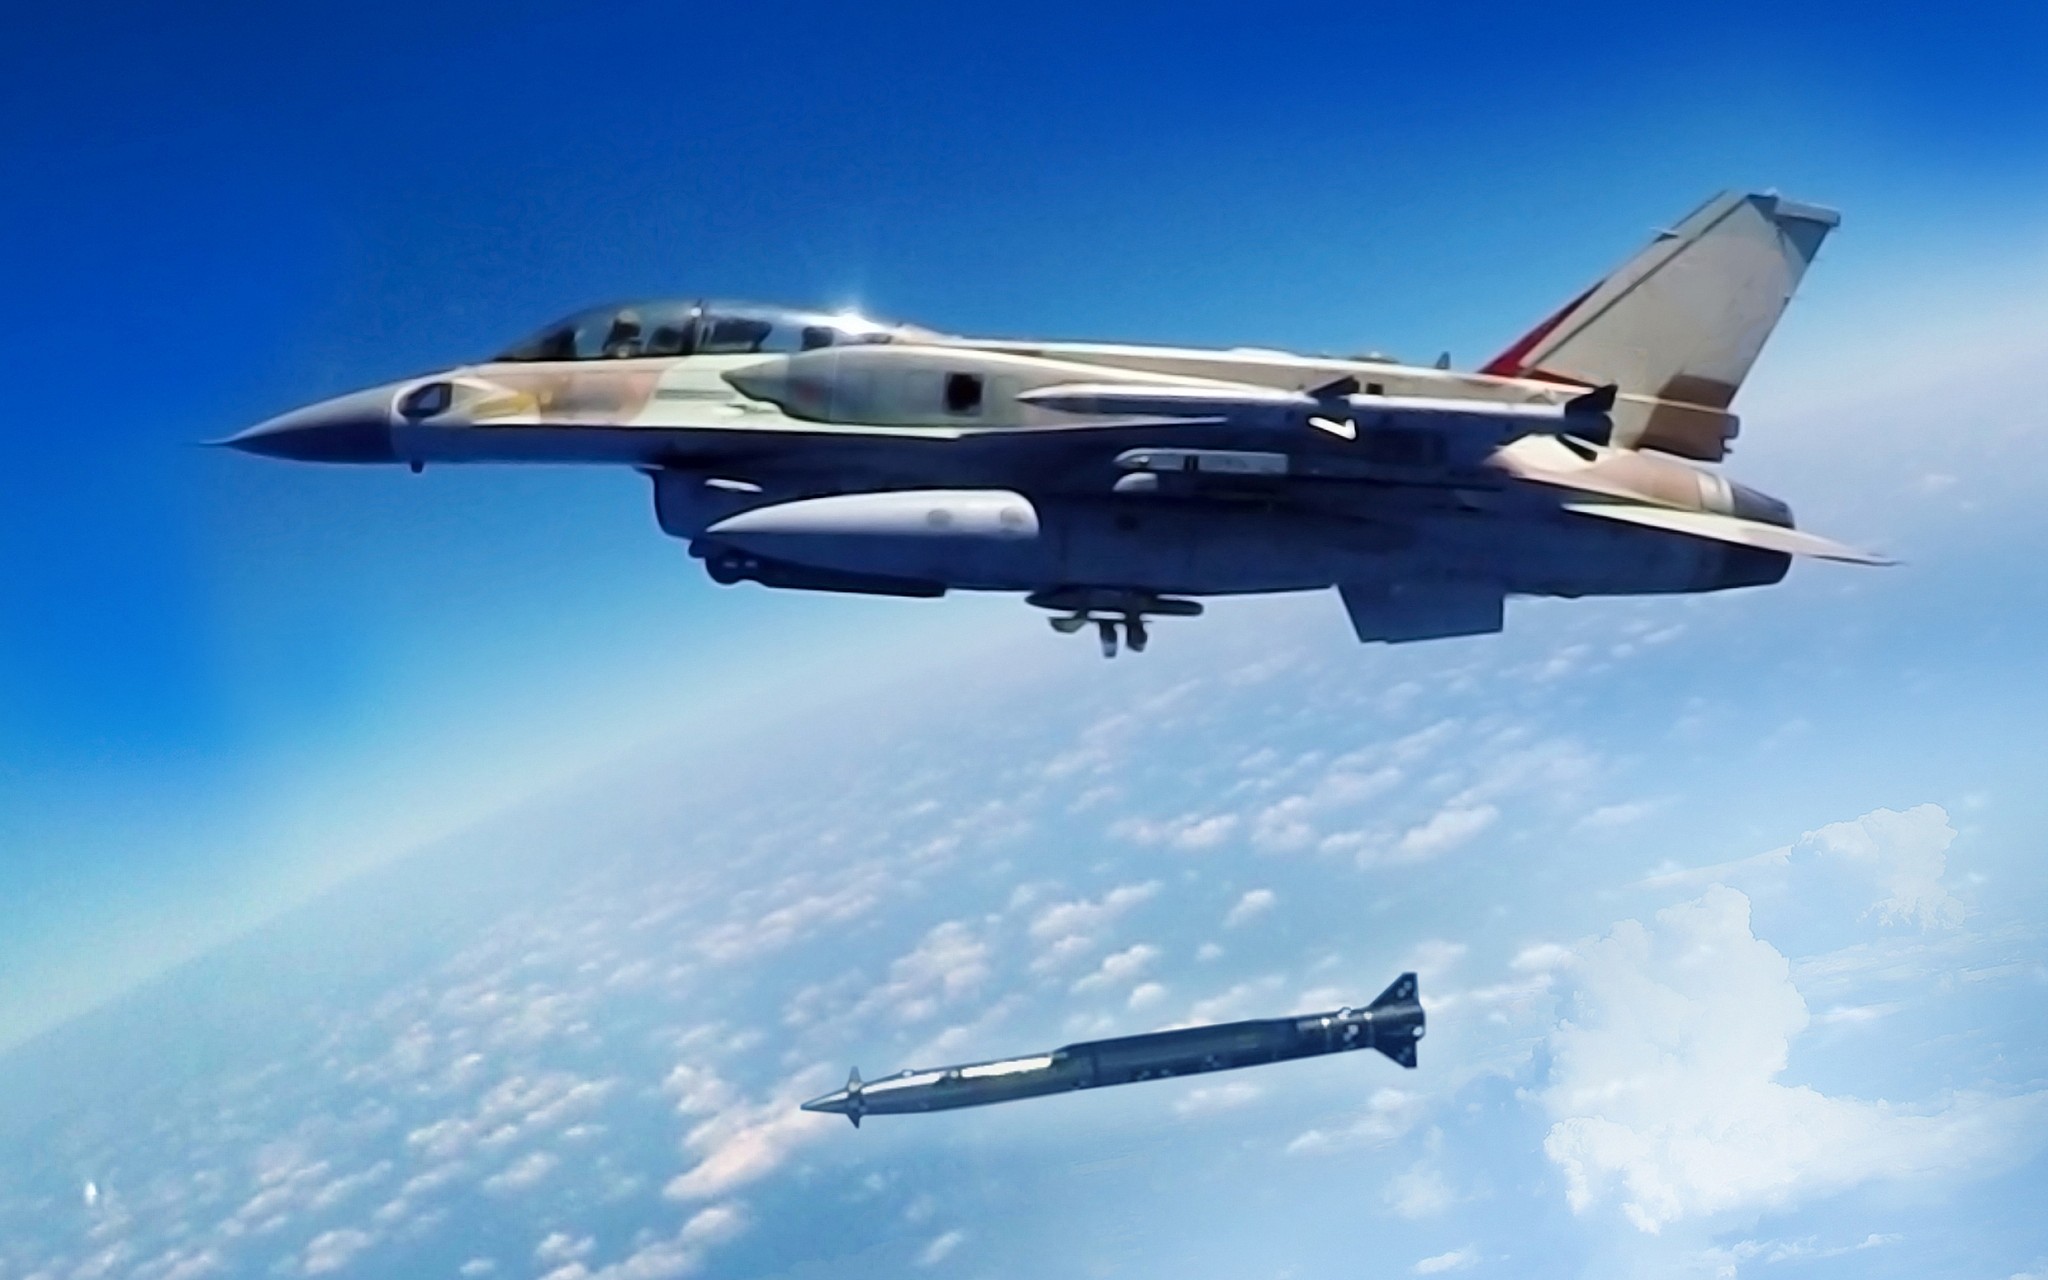 ΕΚΤΑΚΤΟ – Ισραηλινά μαχητικά F-16 προσγειώθηκαν στην 110ΠΜ στη Λάρισα – Θα πετάνε με ελληνικά μαχητικά στο Αιγαίο